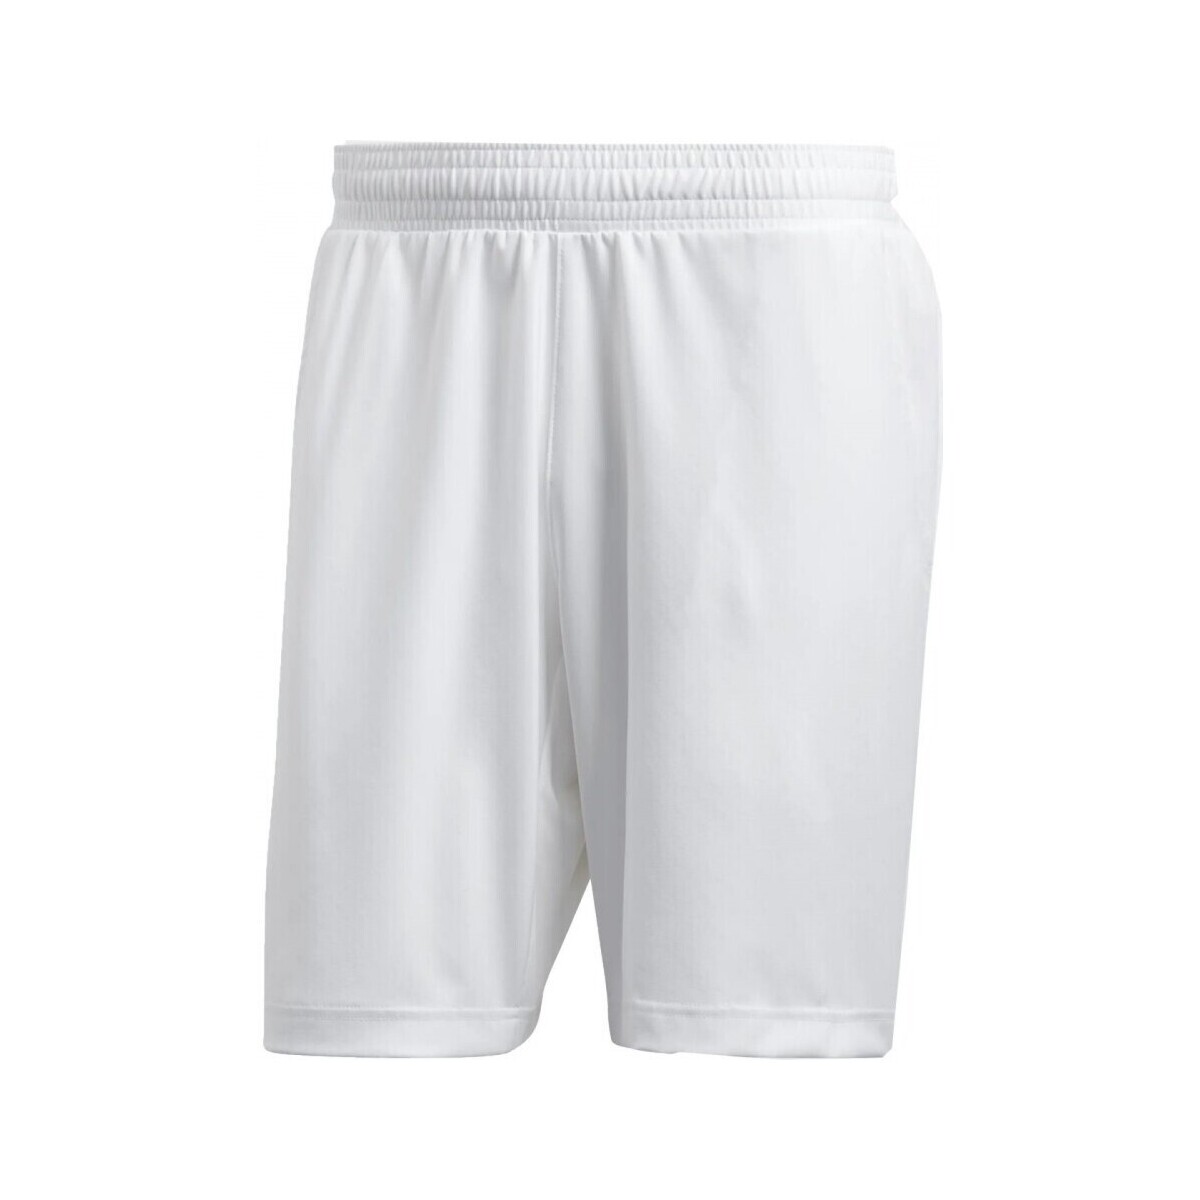 Textil Homem Shorts / Bermudas adidas Originals Short Pblue Branco